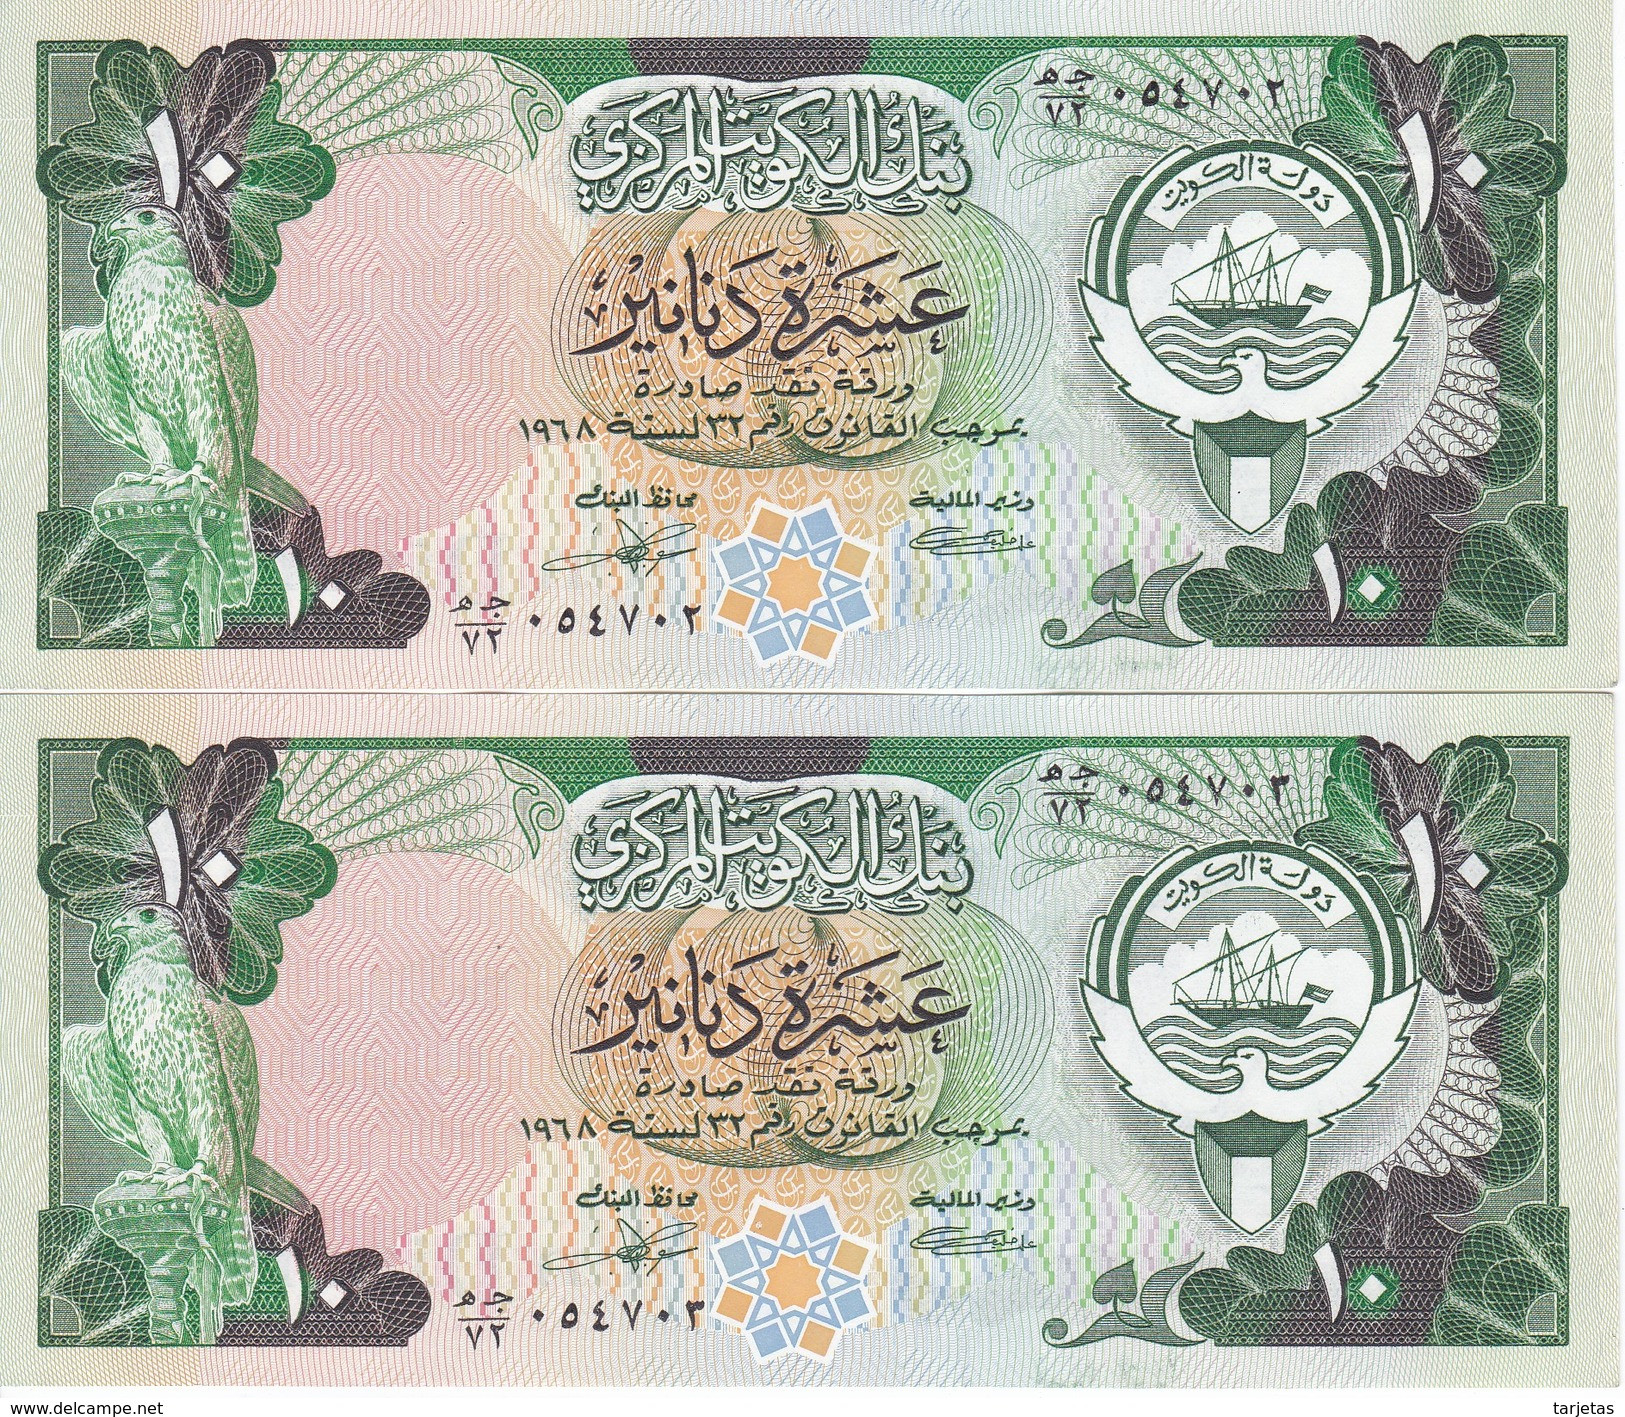 PAREJA CORRELATIVA DE KUWAIT DE 10 DINARS  DEL AÑO 1968 EN CALIDAD EBC (XF) (BANKNOTE) - Koweït